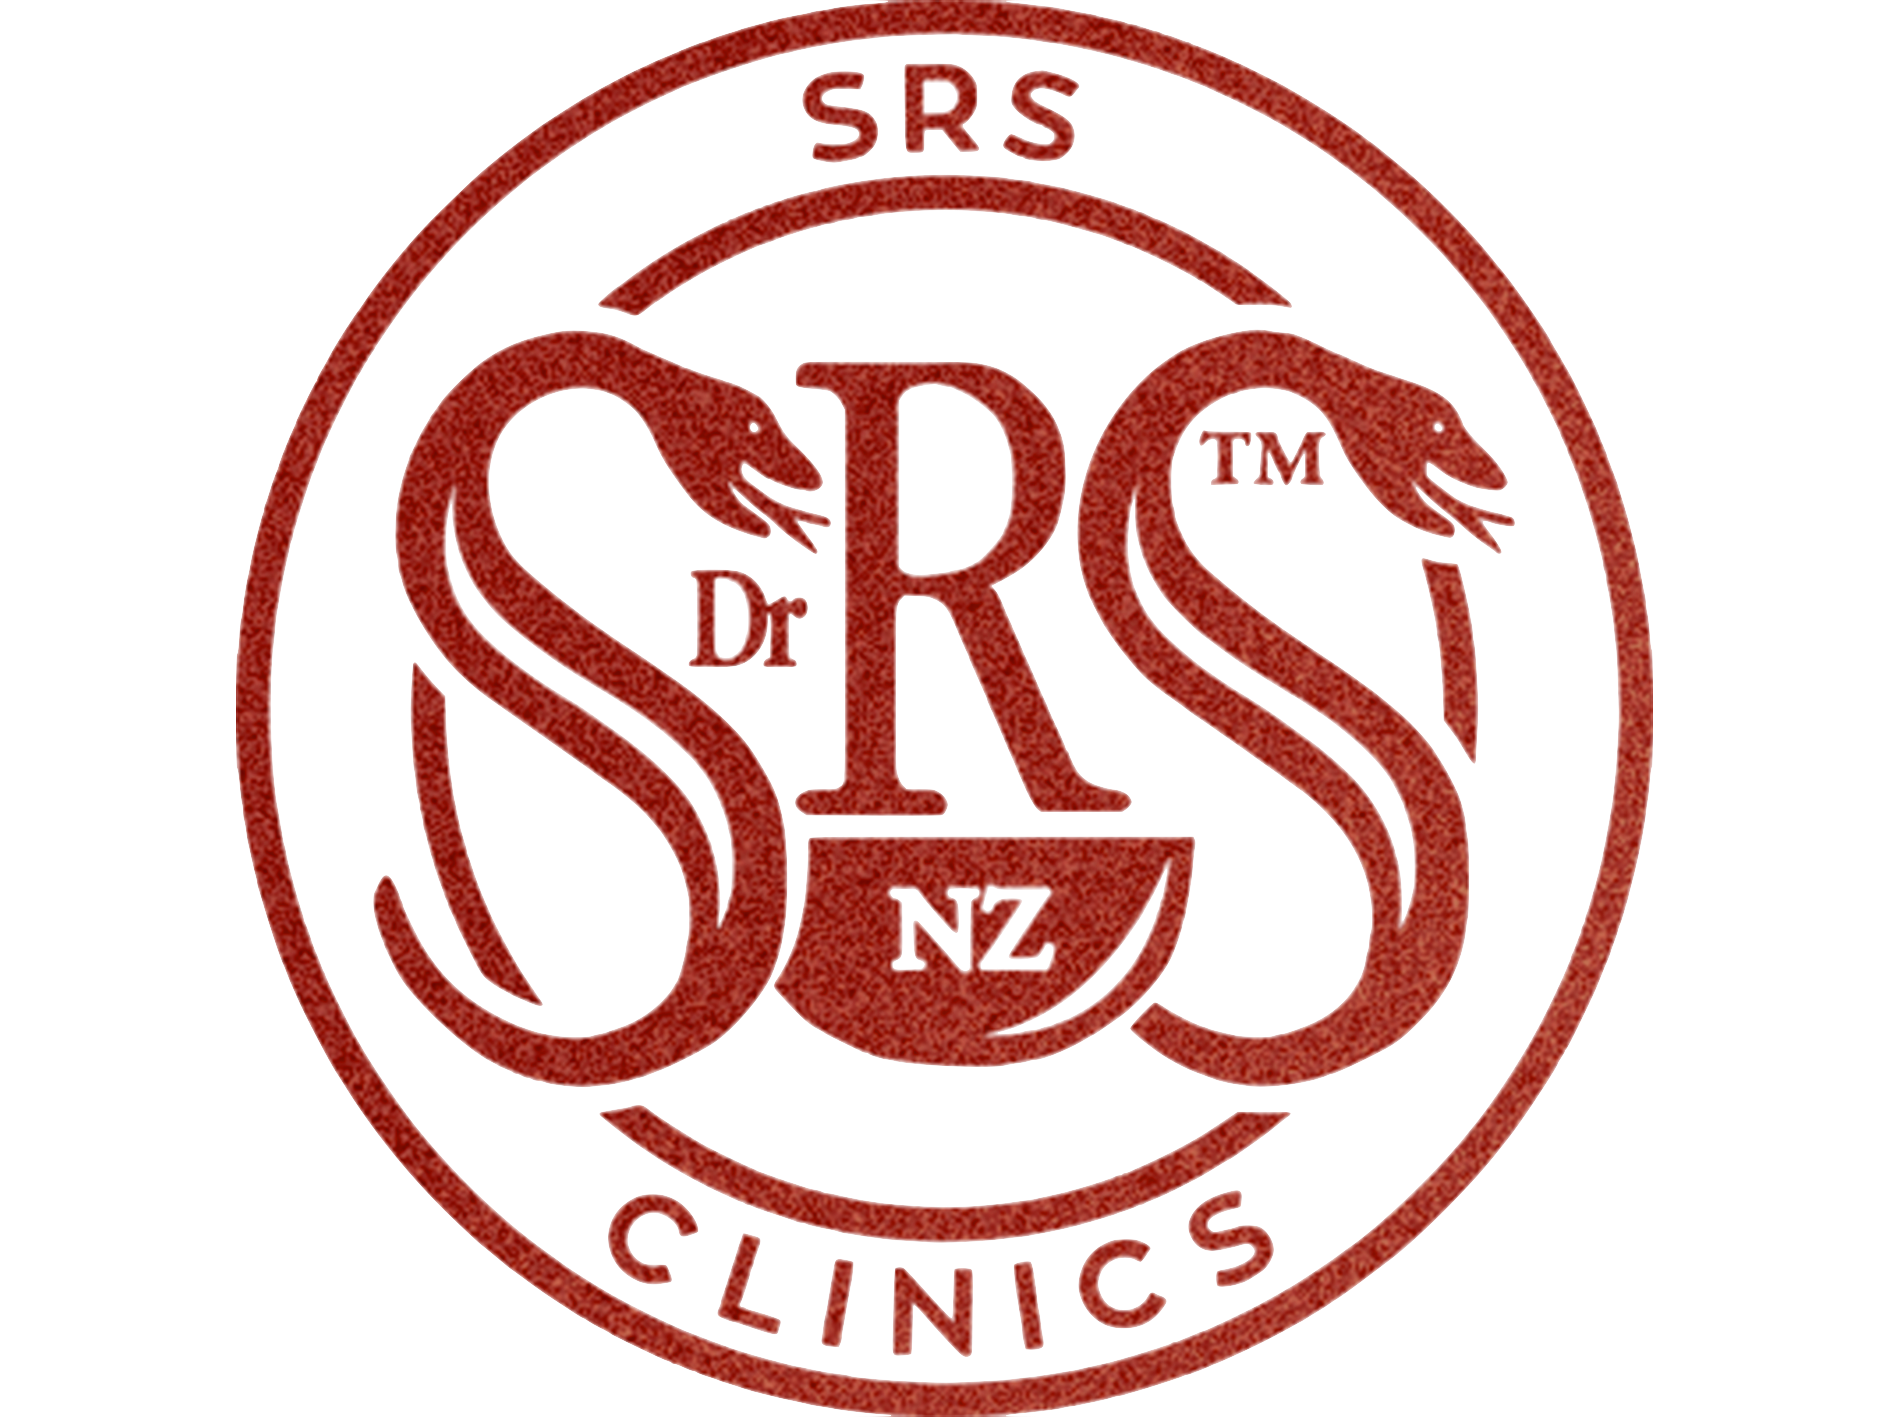 SRS Clinics